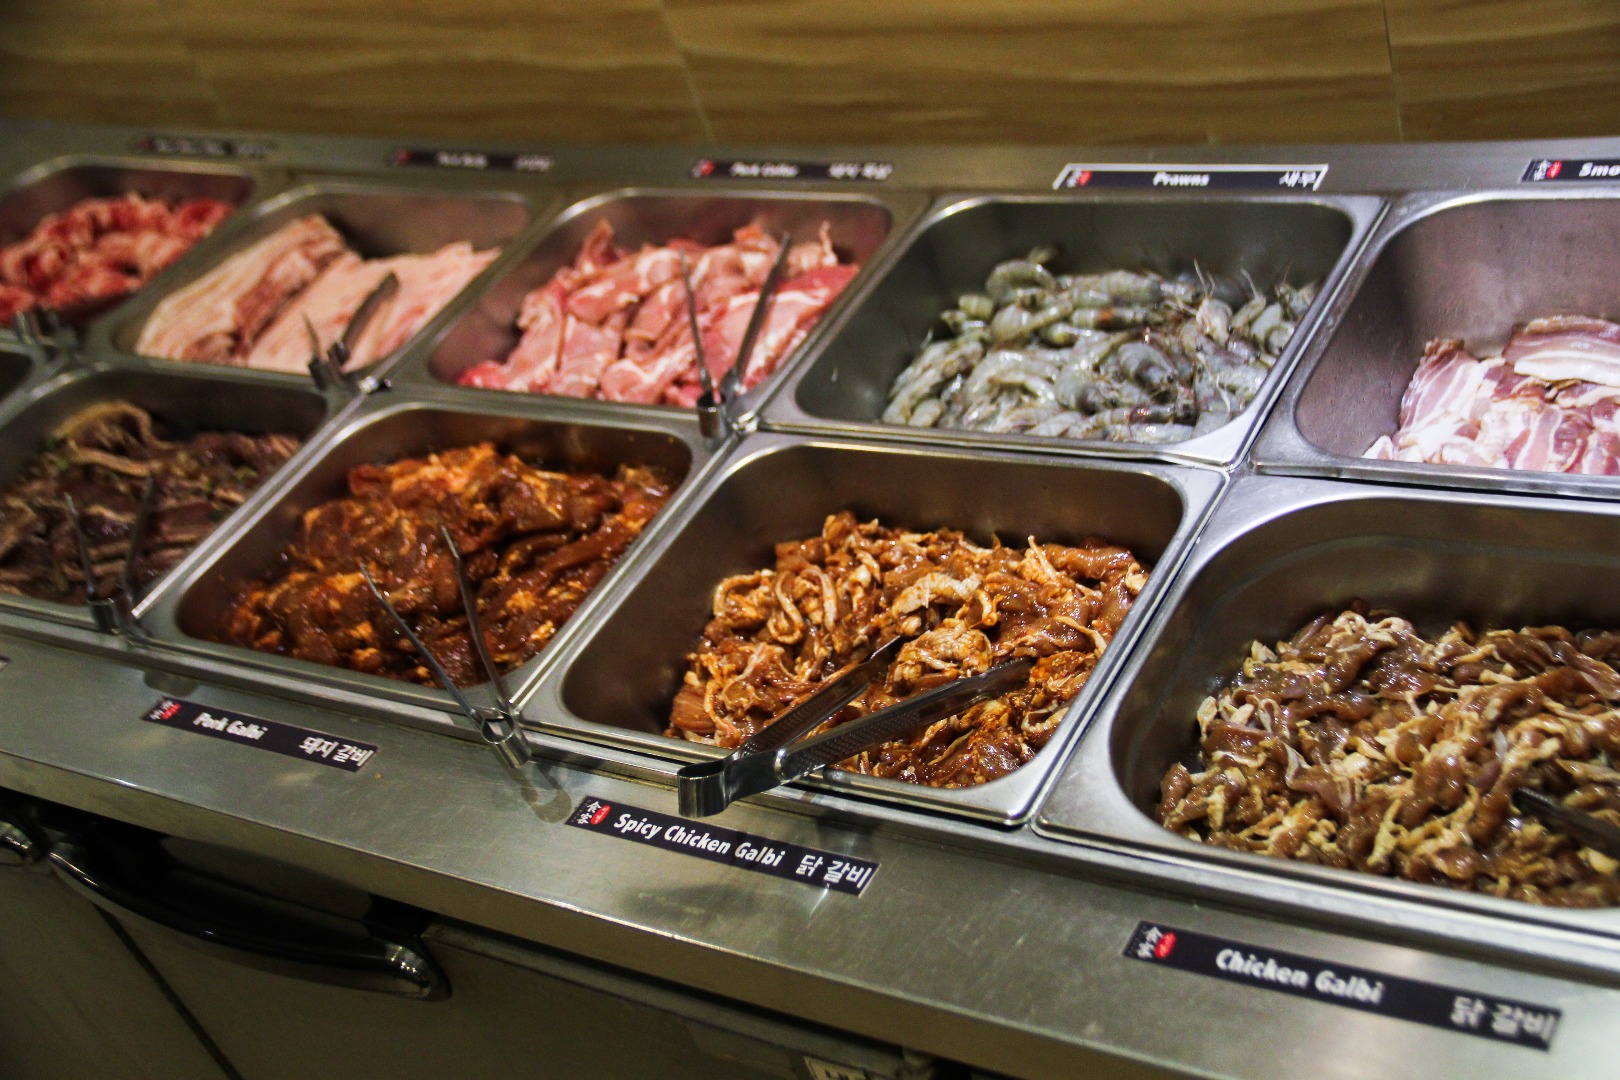 Korean bbq buffet